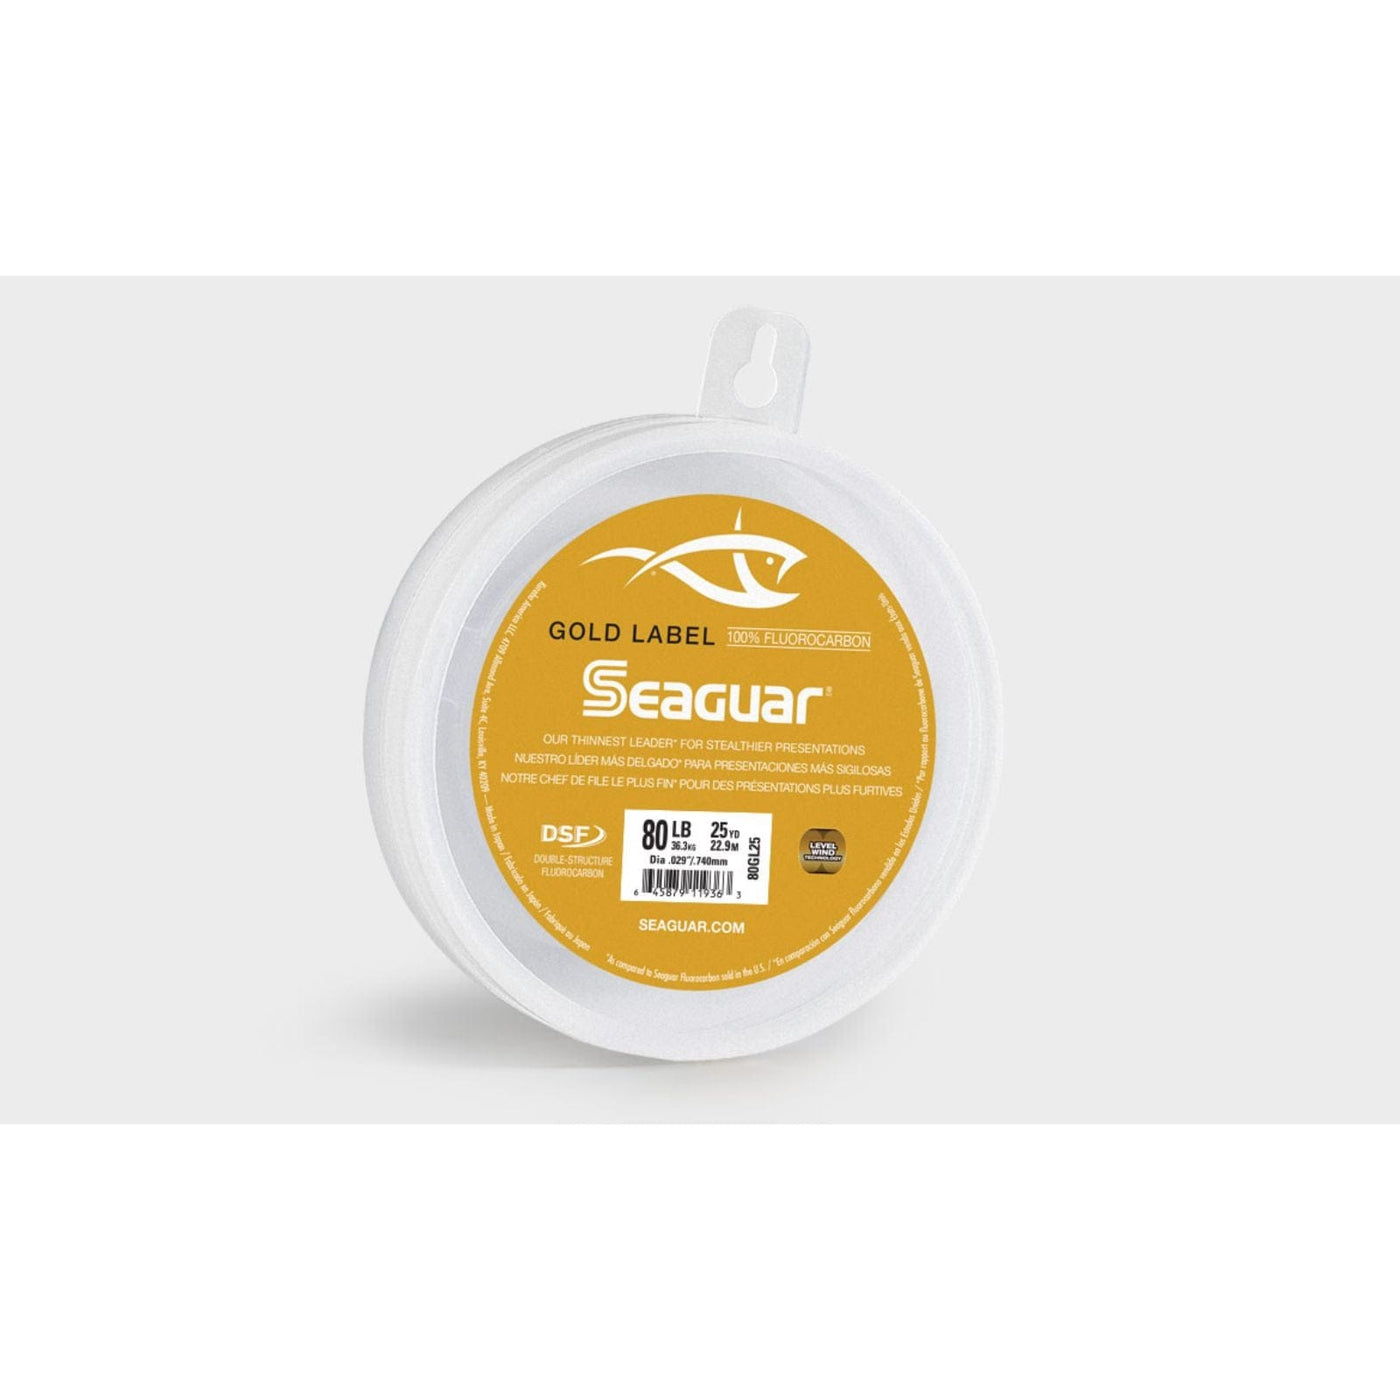 Seaguar Seaguar Gold Label 80GL25 Flourocarbon Leader 25 Yds Fishing